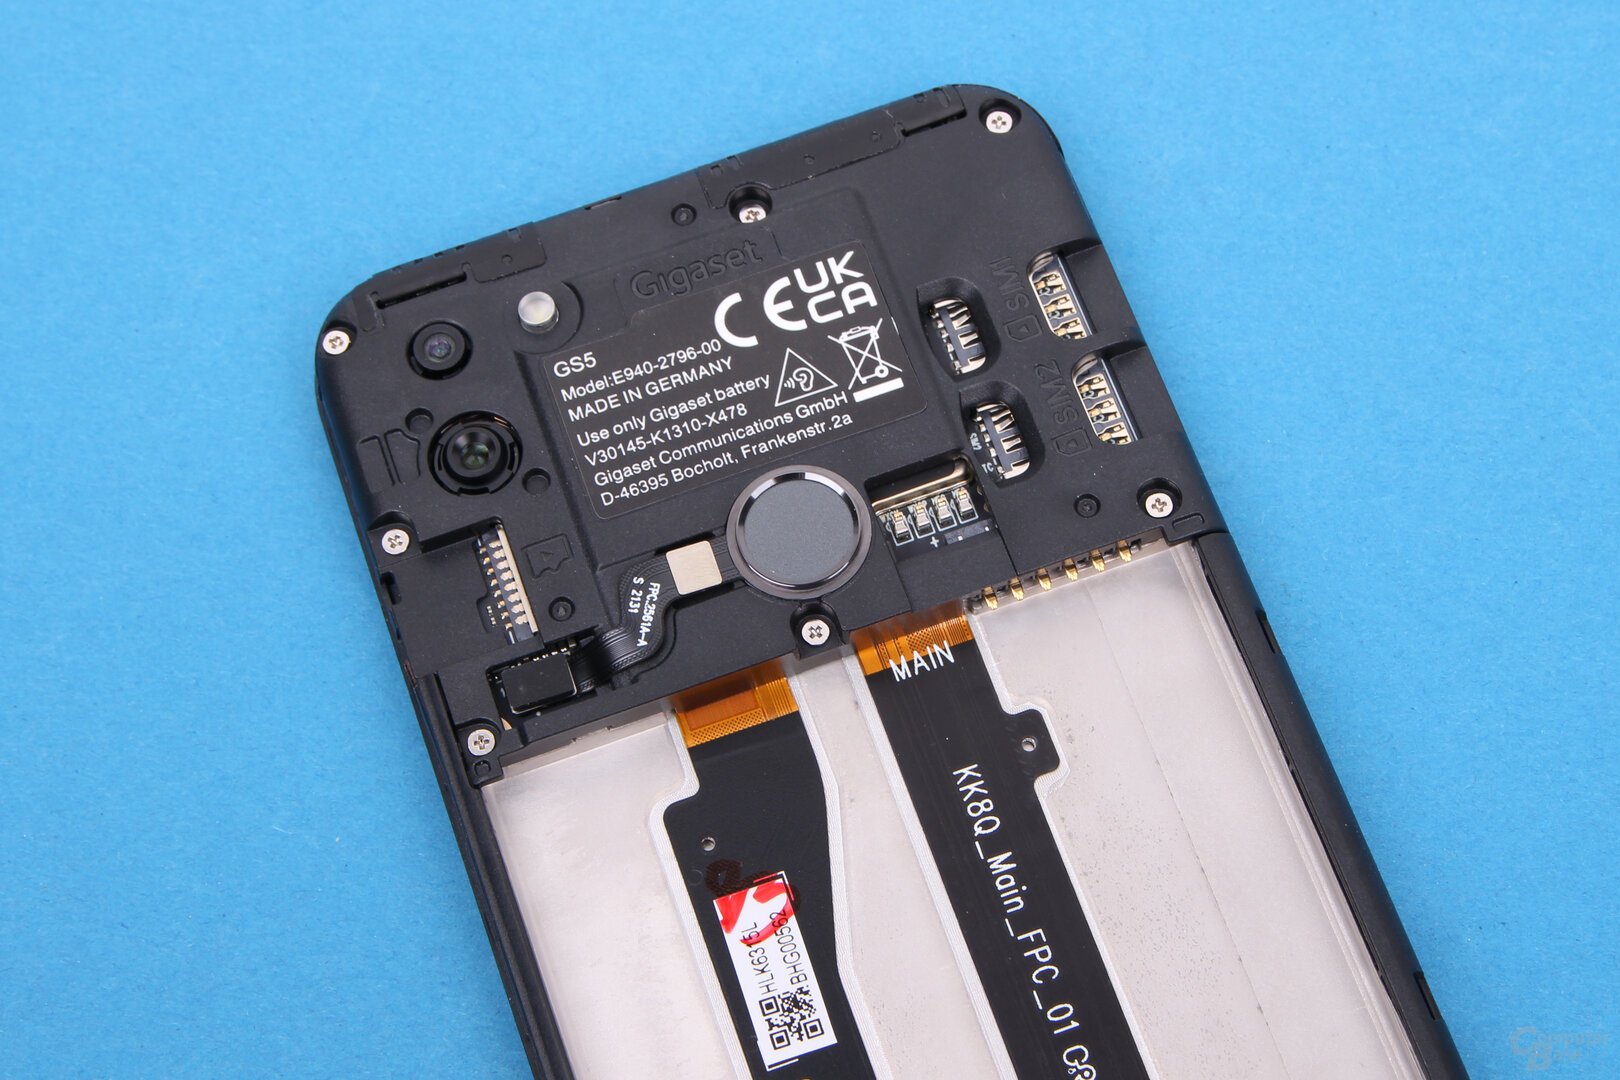 Gigaset GS5: 2 SIM-Steckplätze und ein microSD-Slot